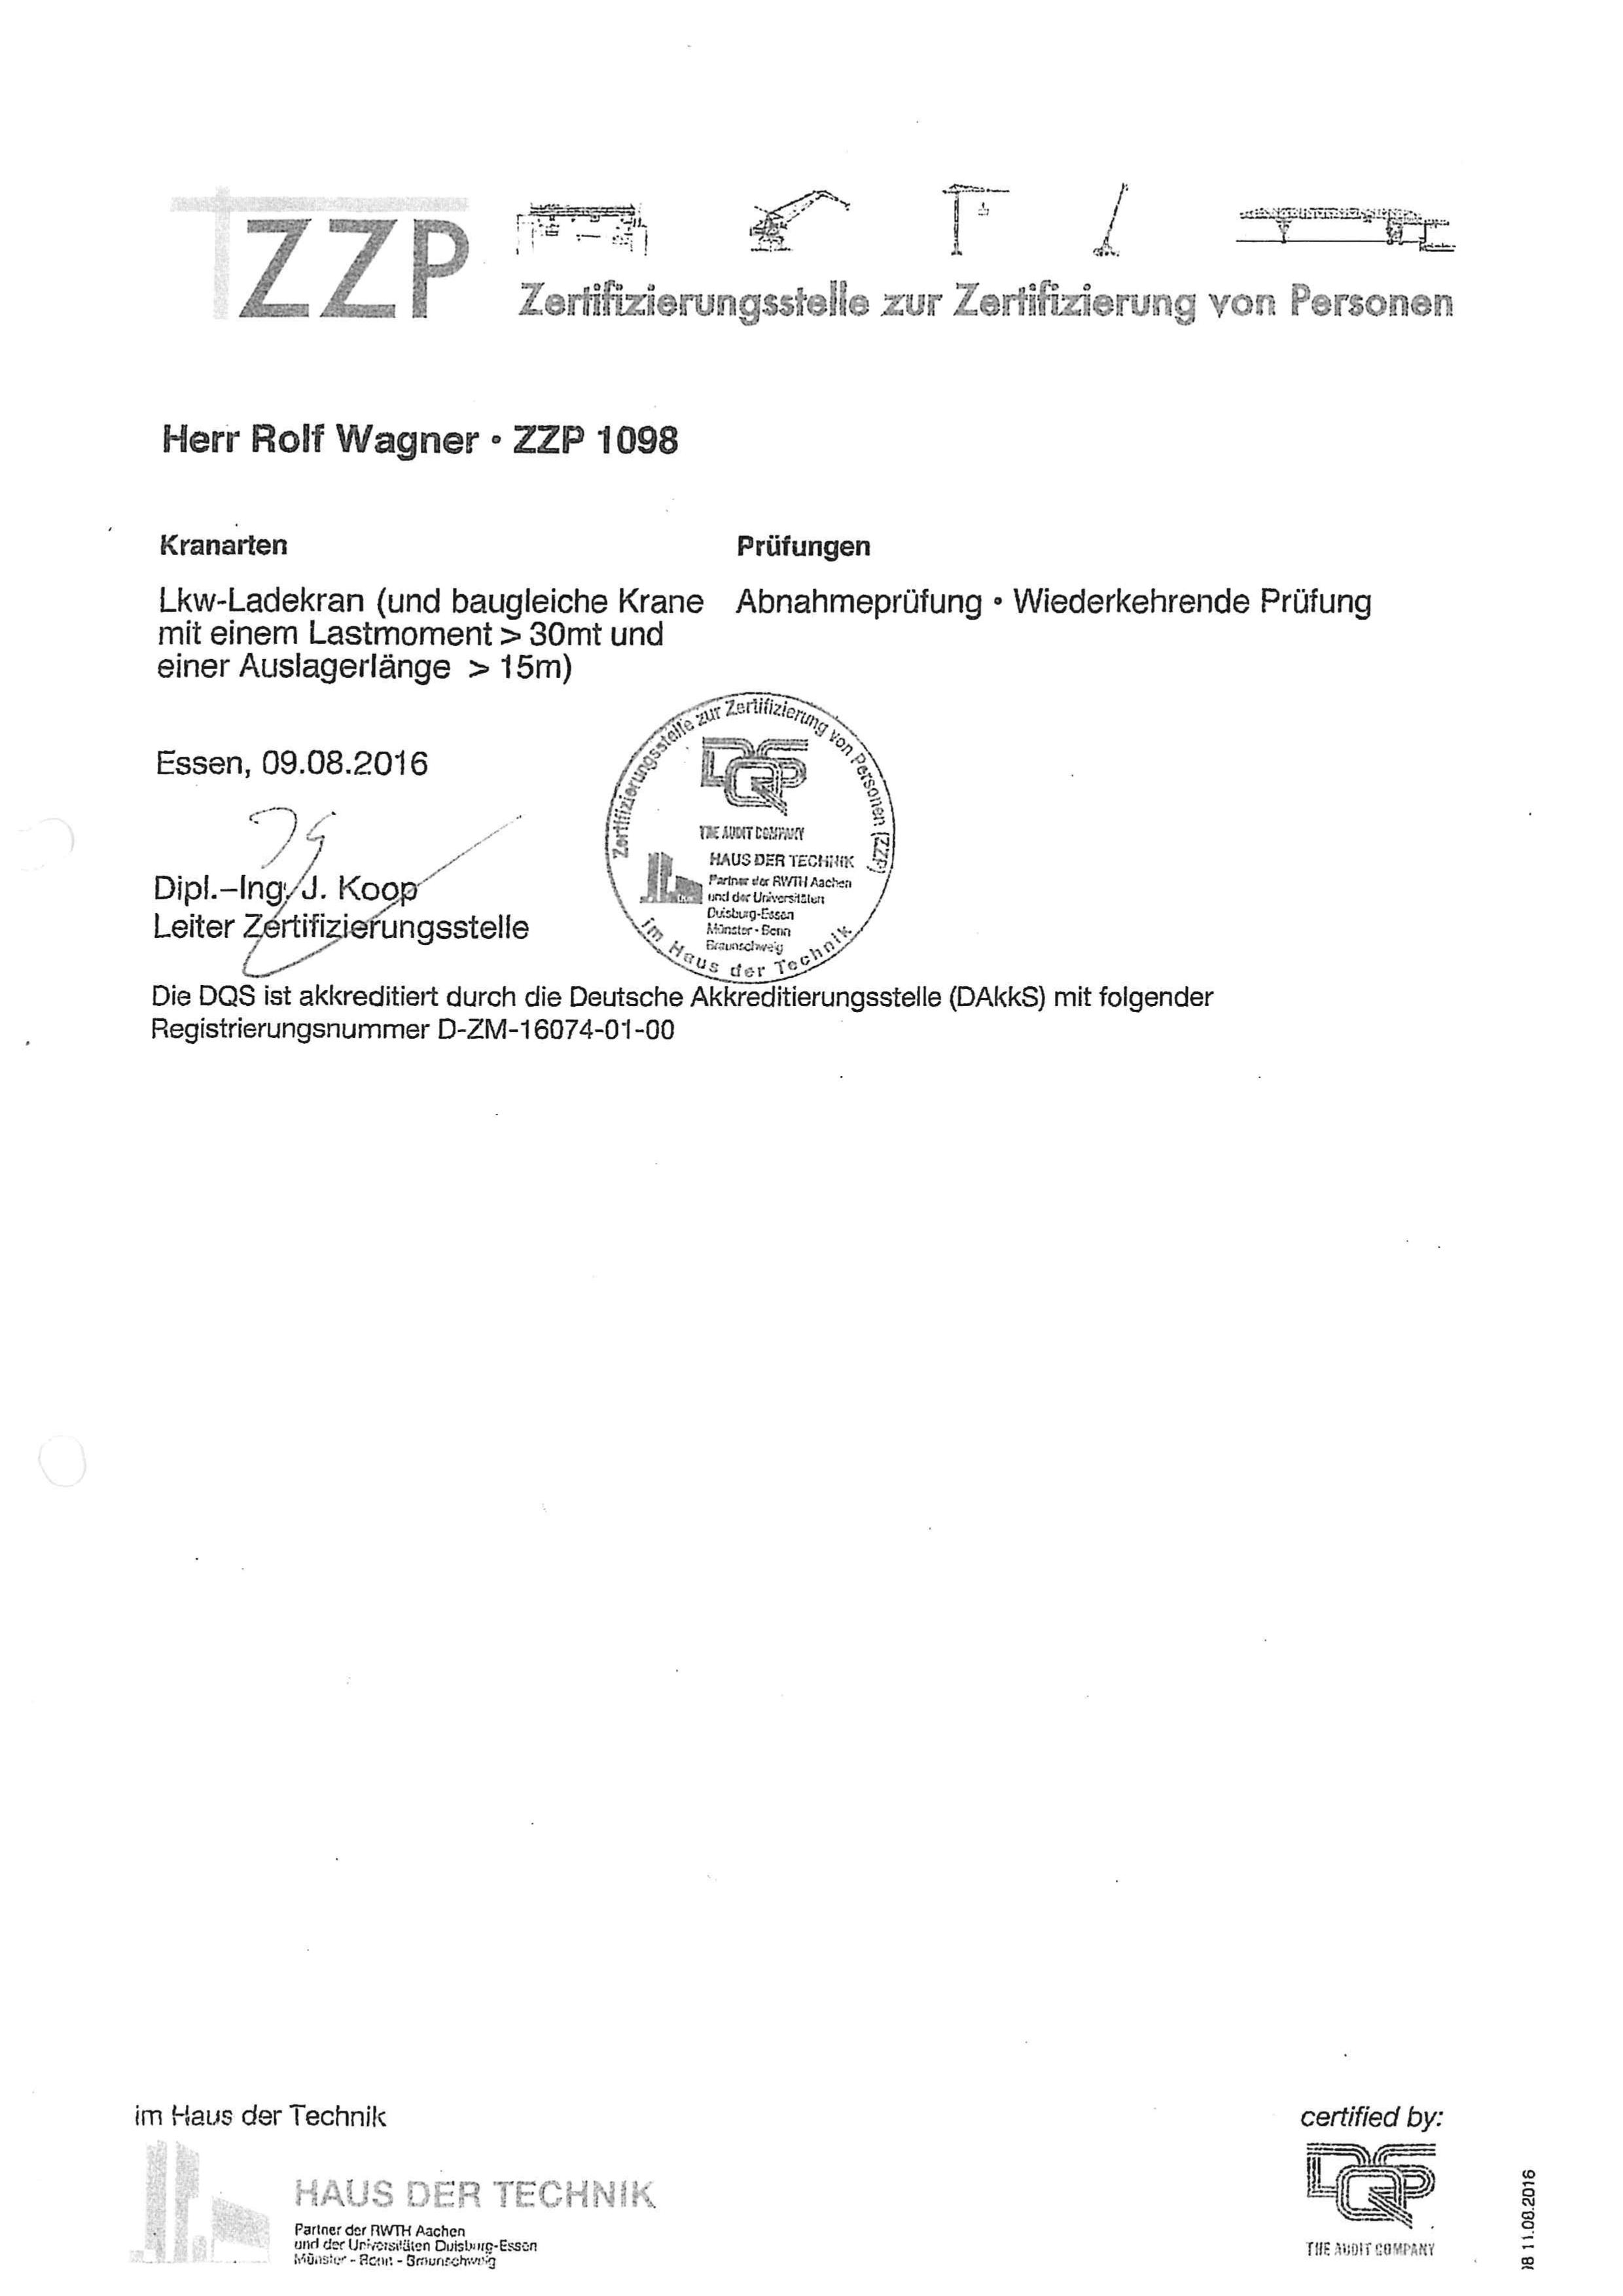 Urkunde Rolf Wagner